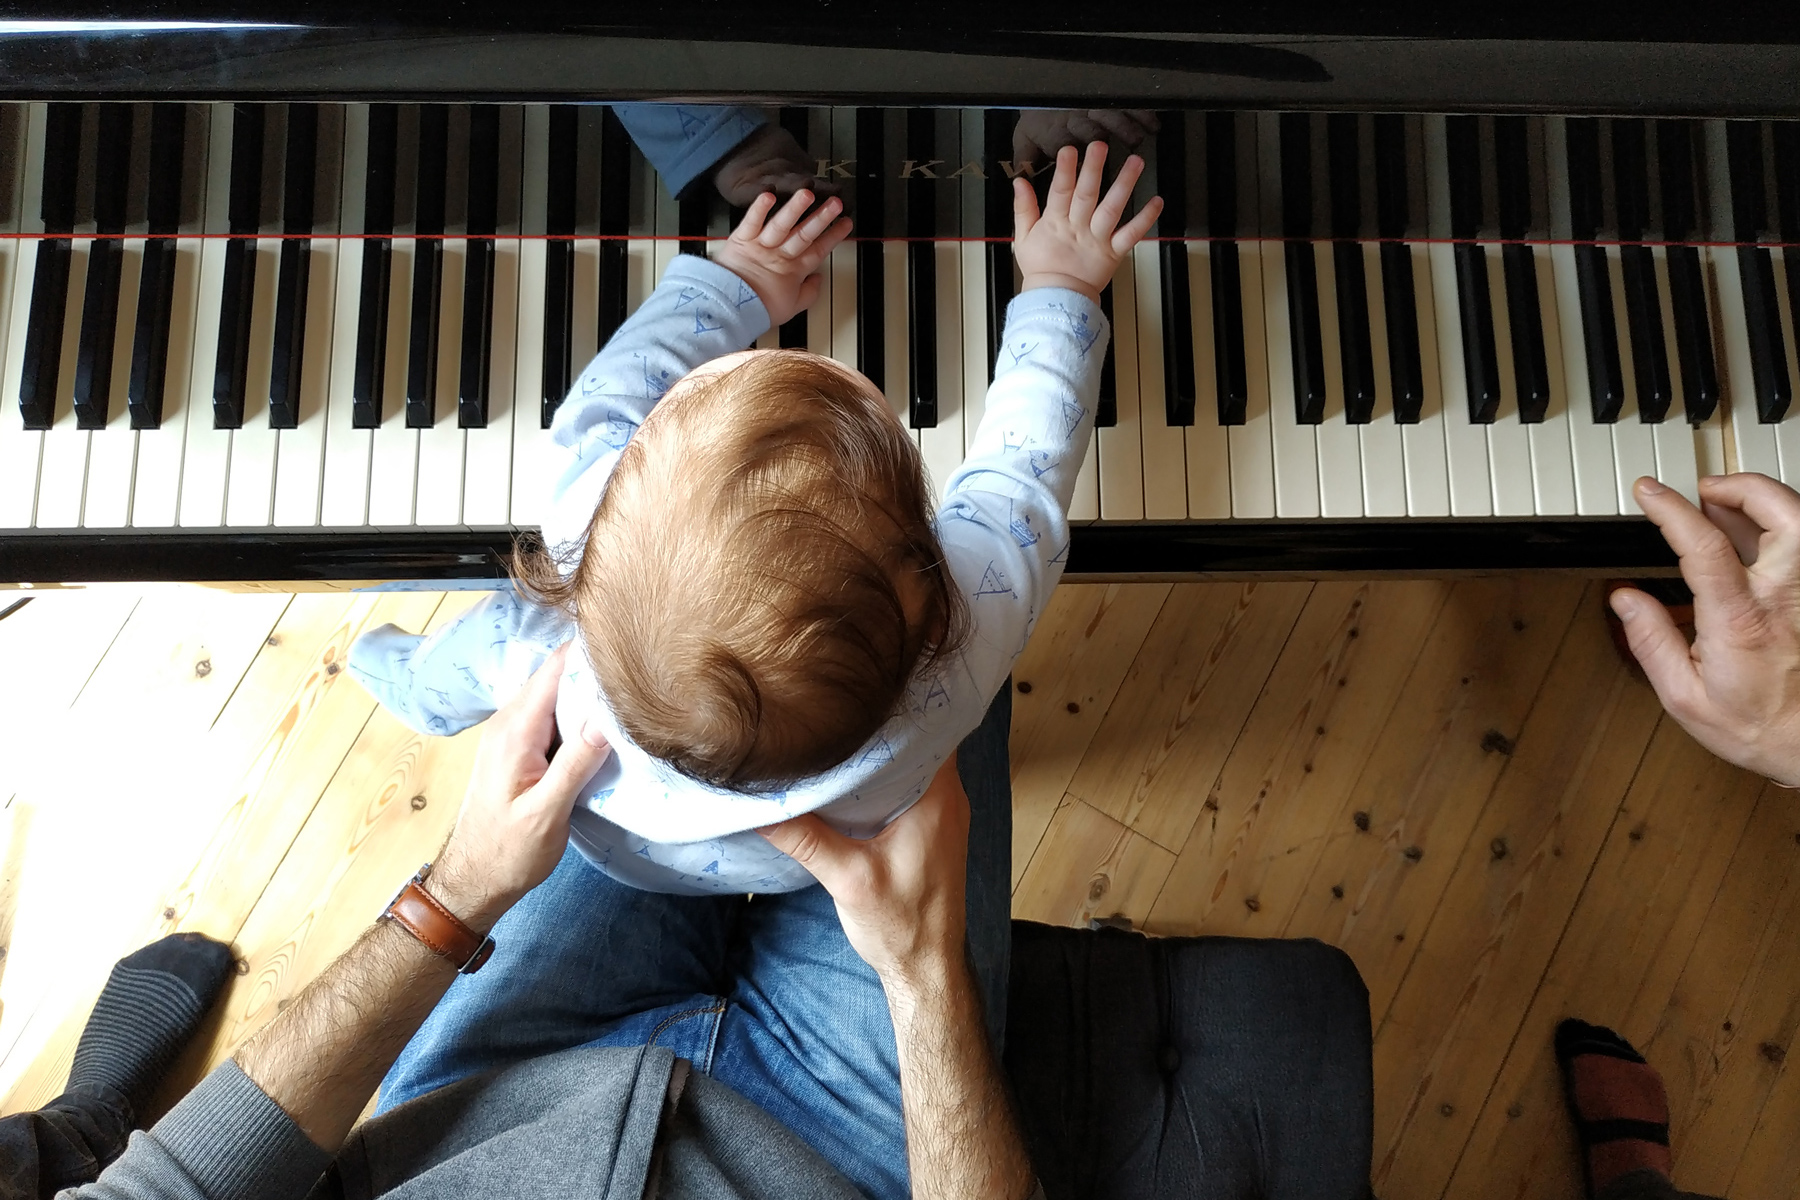 baby plays piano / muzike. family conceρts 09